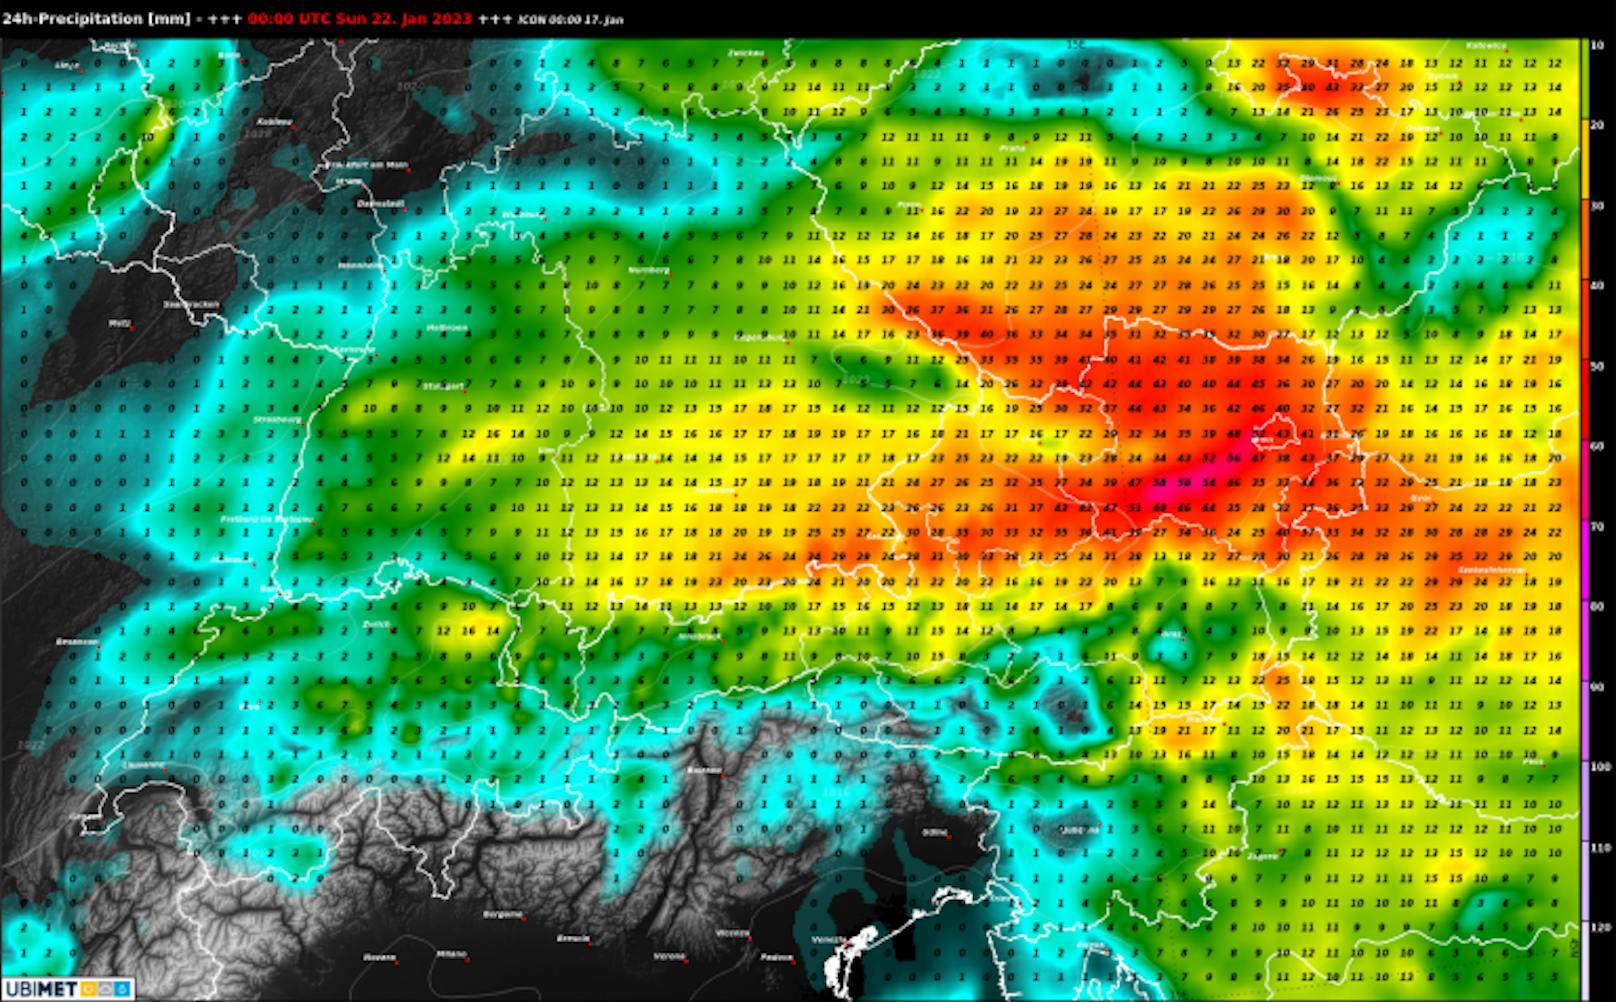 Prognose der Niederschlagsmenge über 24 Stunden für Samstag, den 21.01.2023 nach dem ICON-Model.